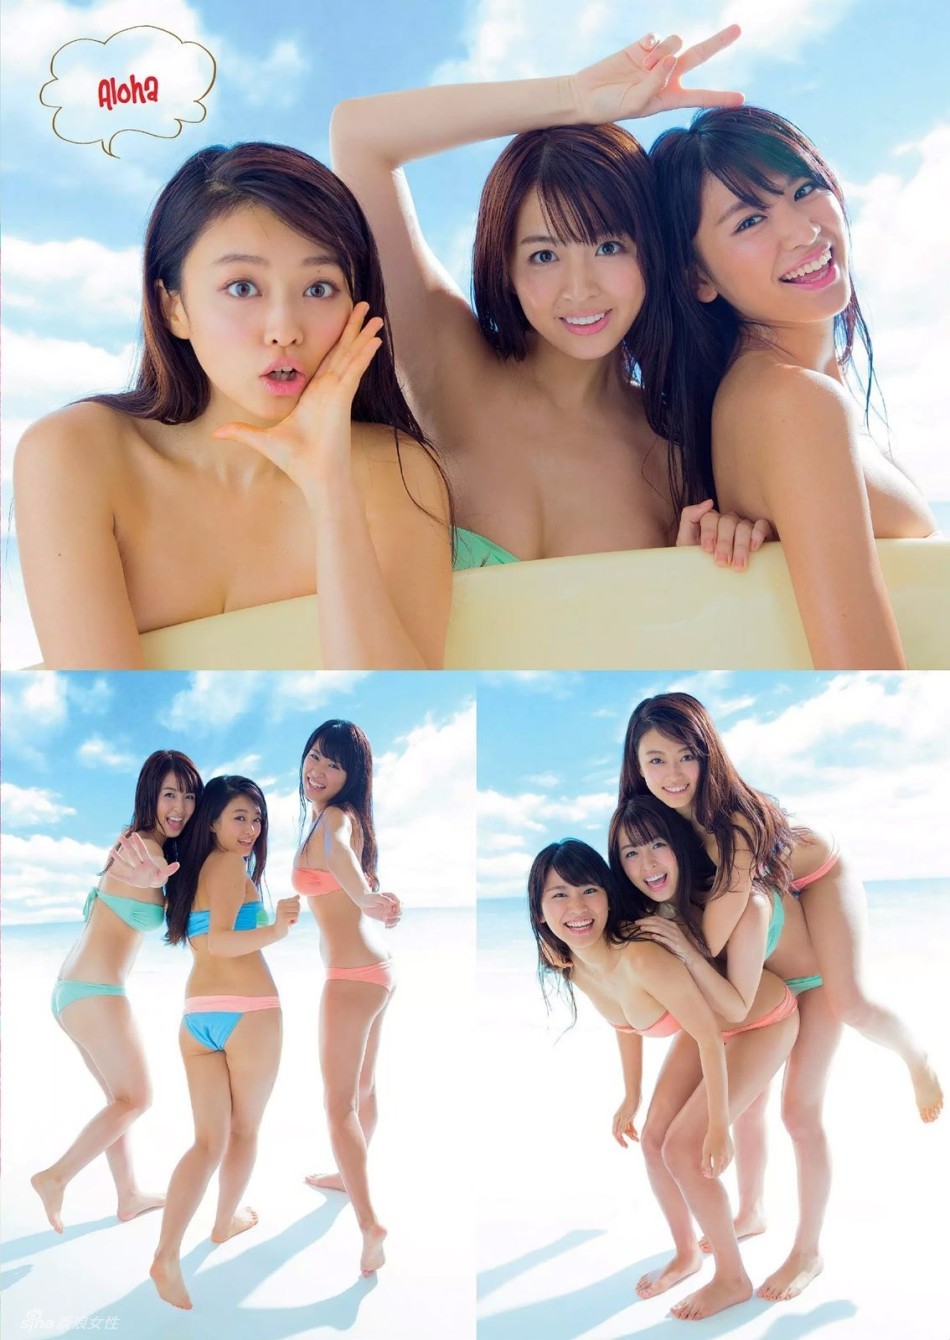 （日本weekly playboy）日本写真女星三姐妹泳装清凉身材惹火灵动可人